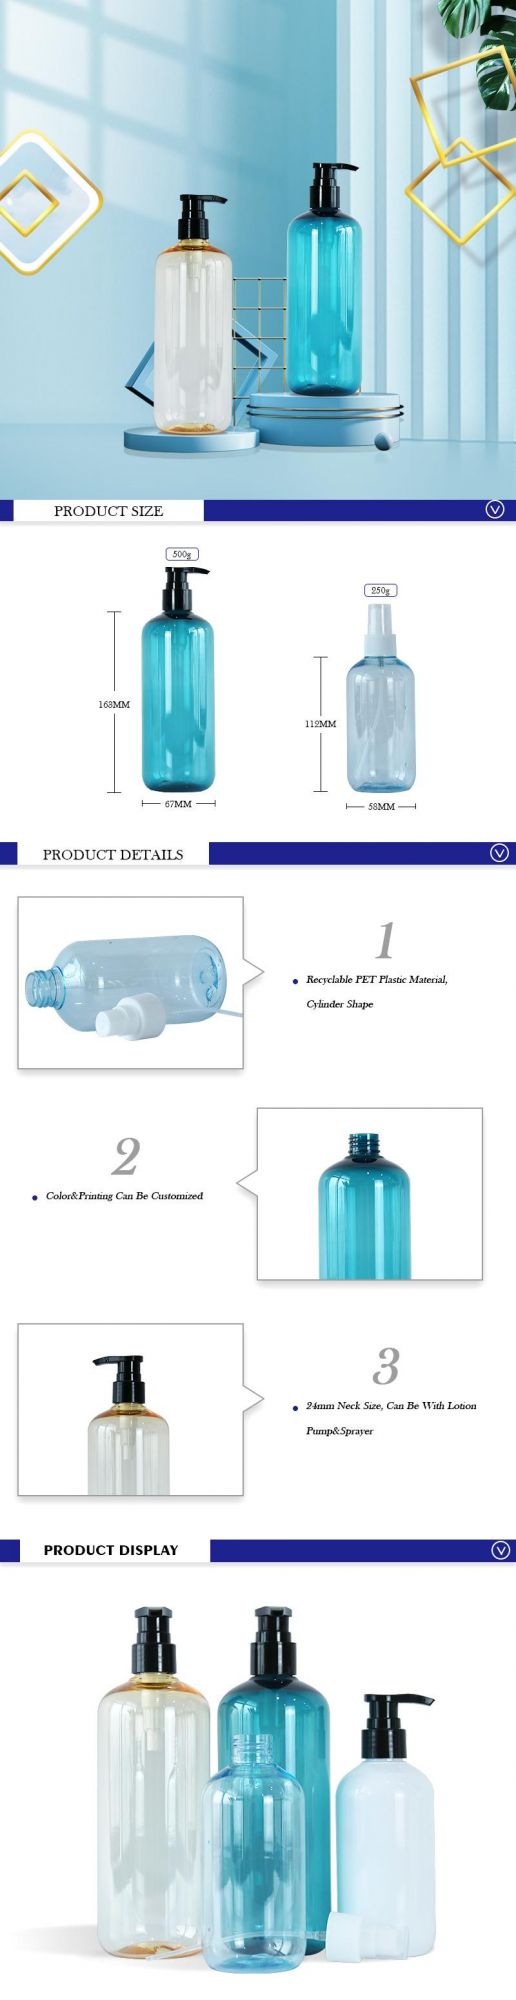 250ml 500ml Color Pet Empty Shampoo Plastic Bottles Transparent Lotion container